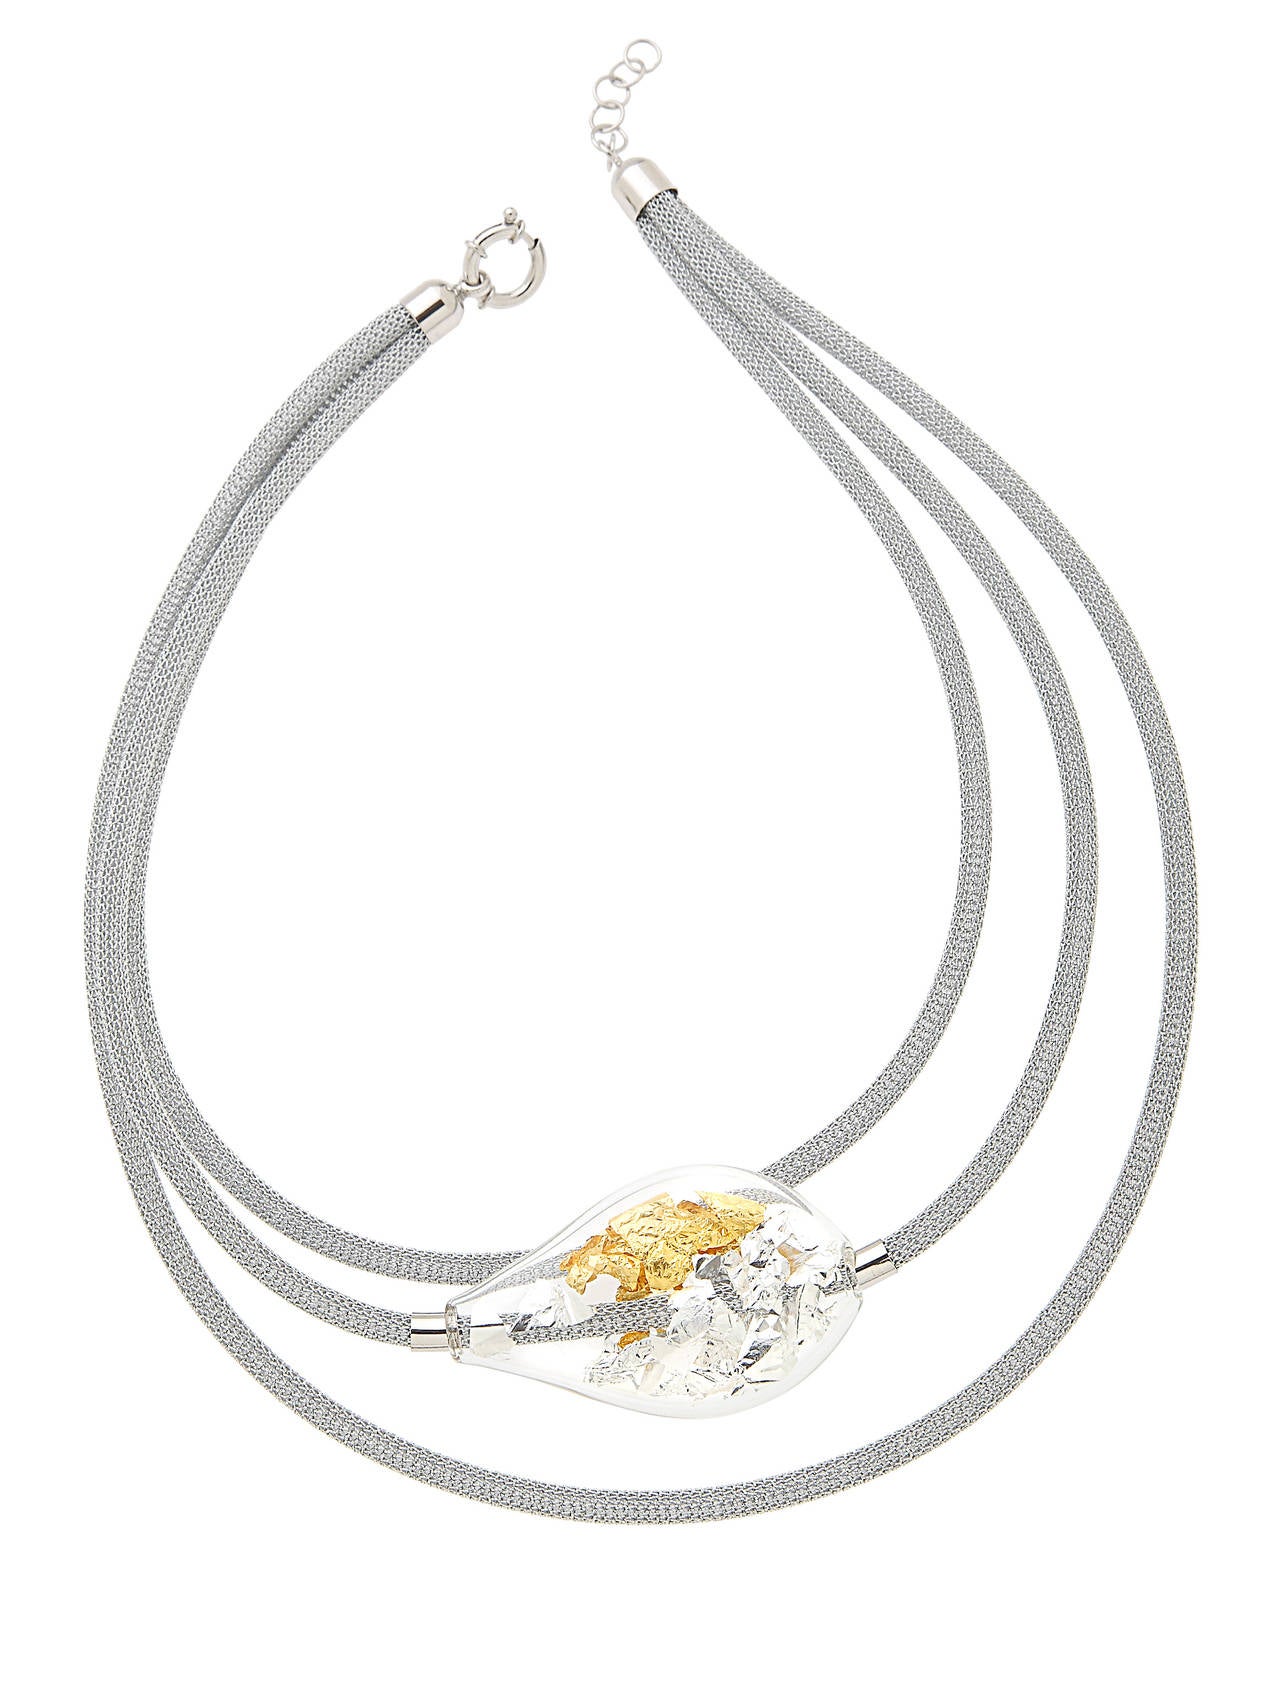 Italian Necklace by Manuela Zanvettori, Jewelry Designer in Murano